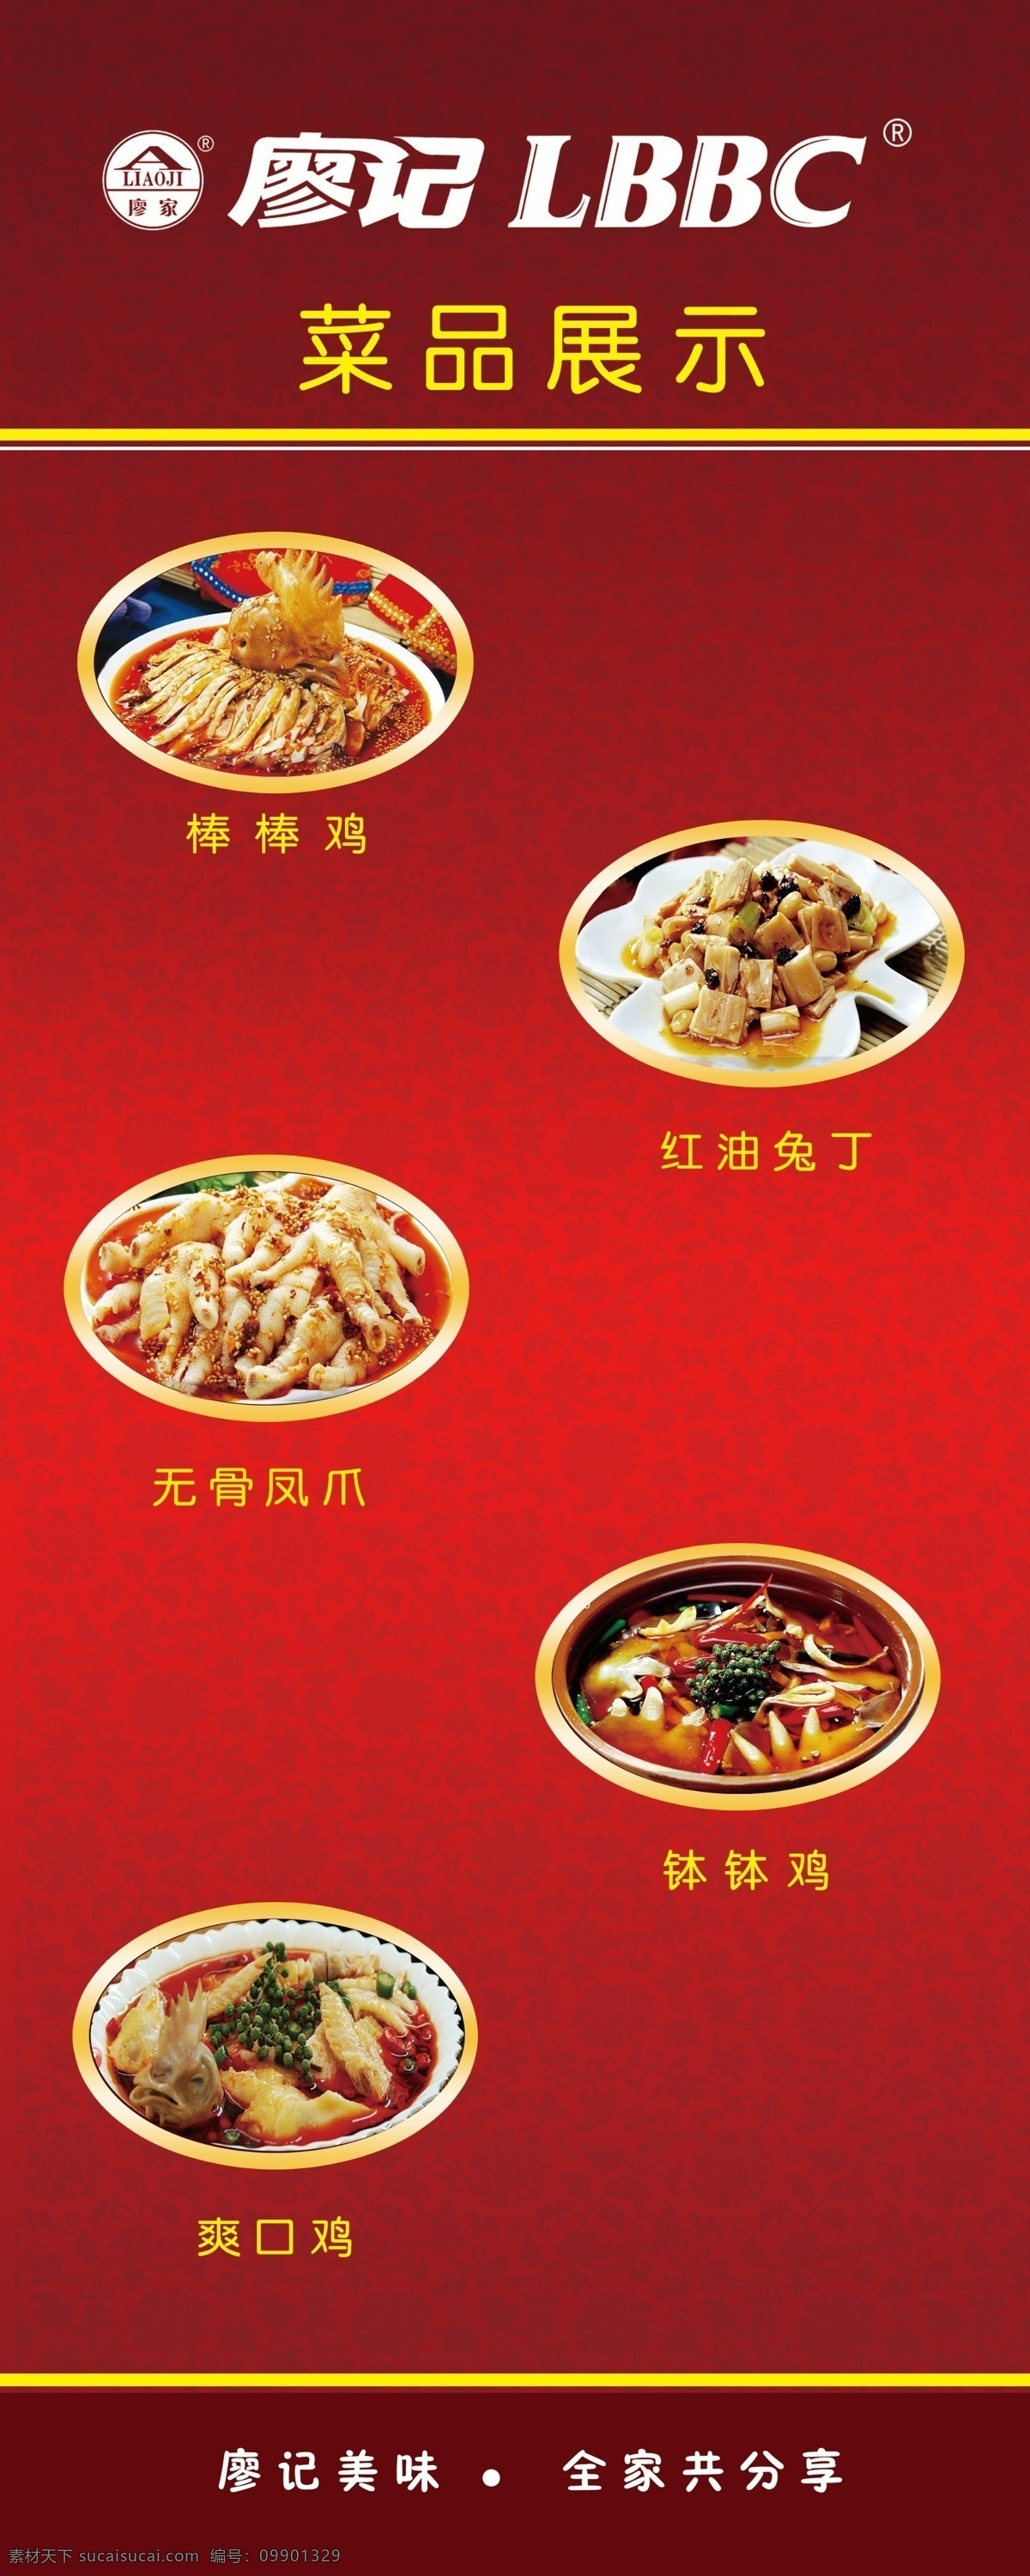 廖记菜品展示 红色色调 廖记商标 花纹 菜品 广告设计模板 源文件